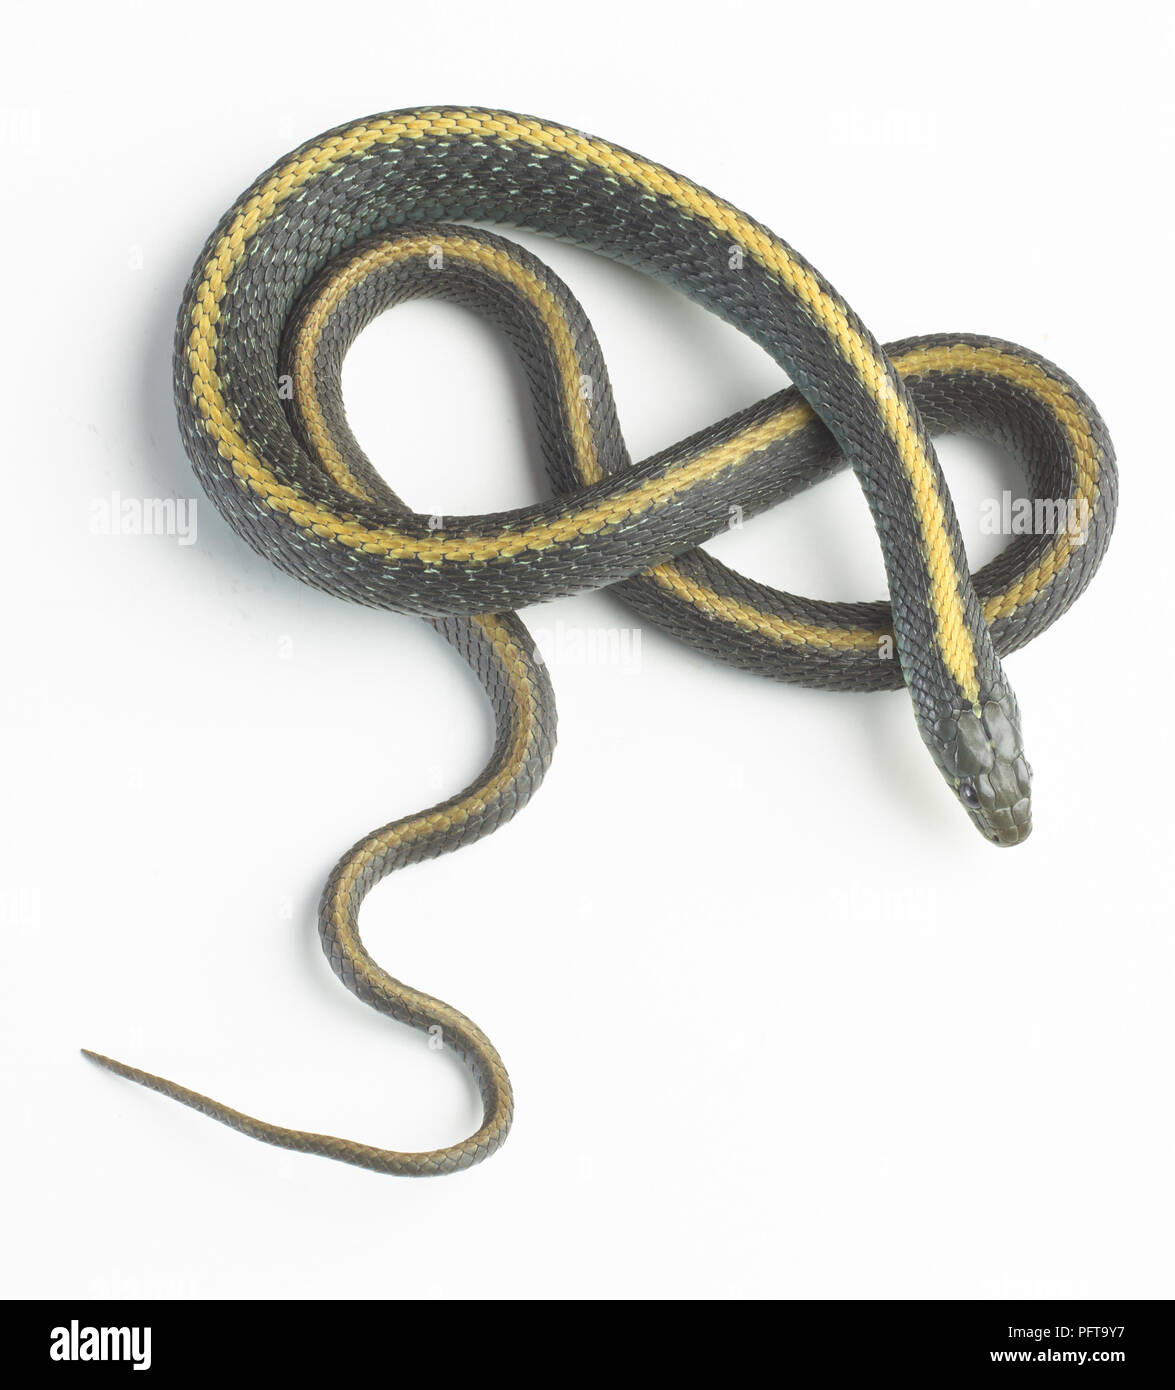 Santa Cruz garter snake (Thamnophis atratus) Stockfoto